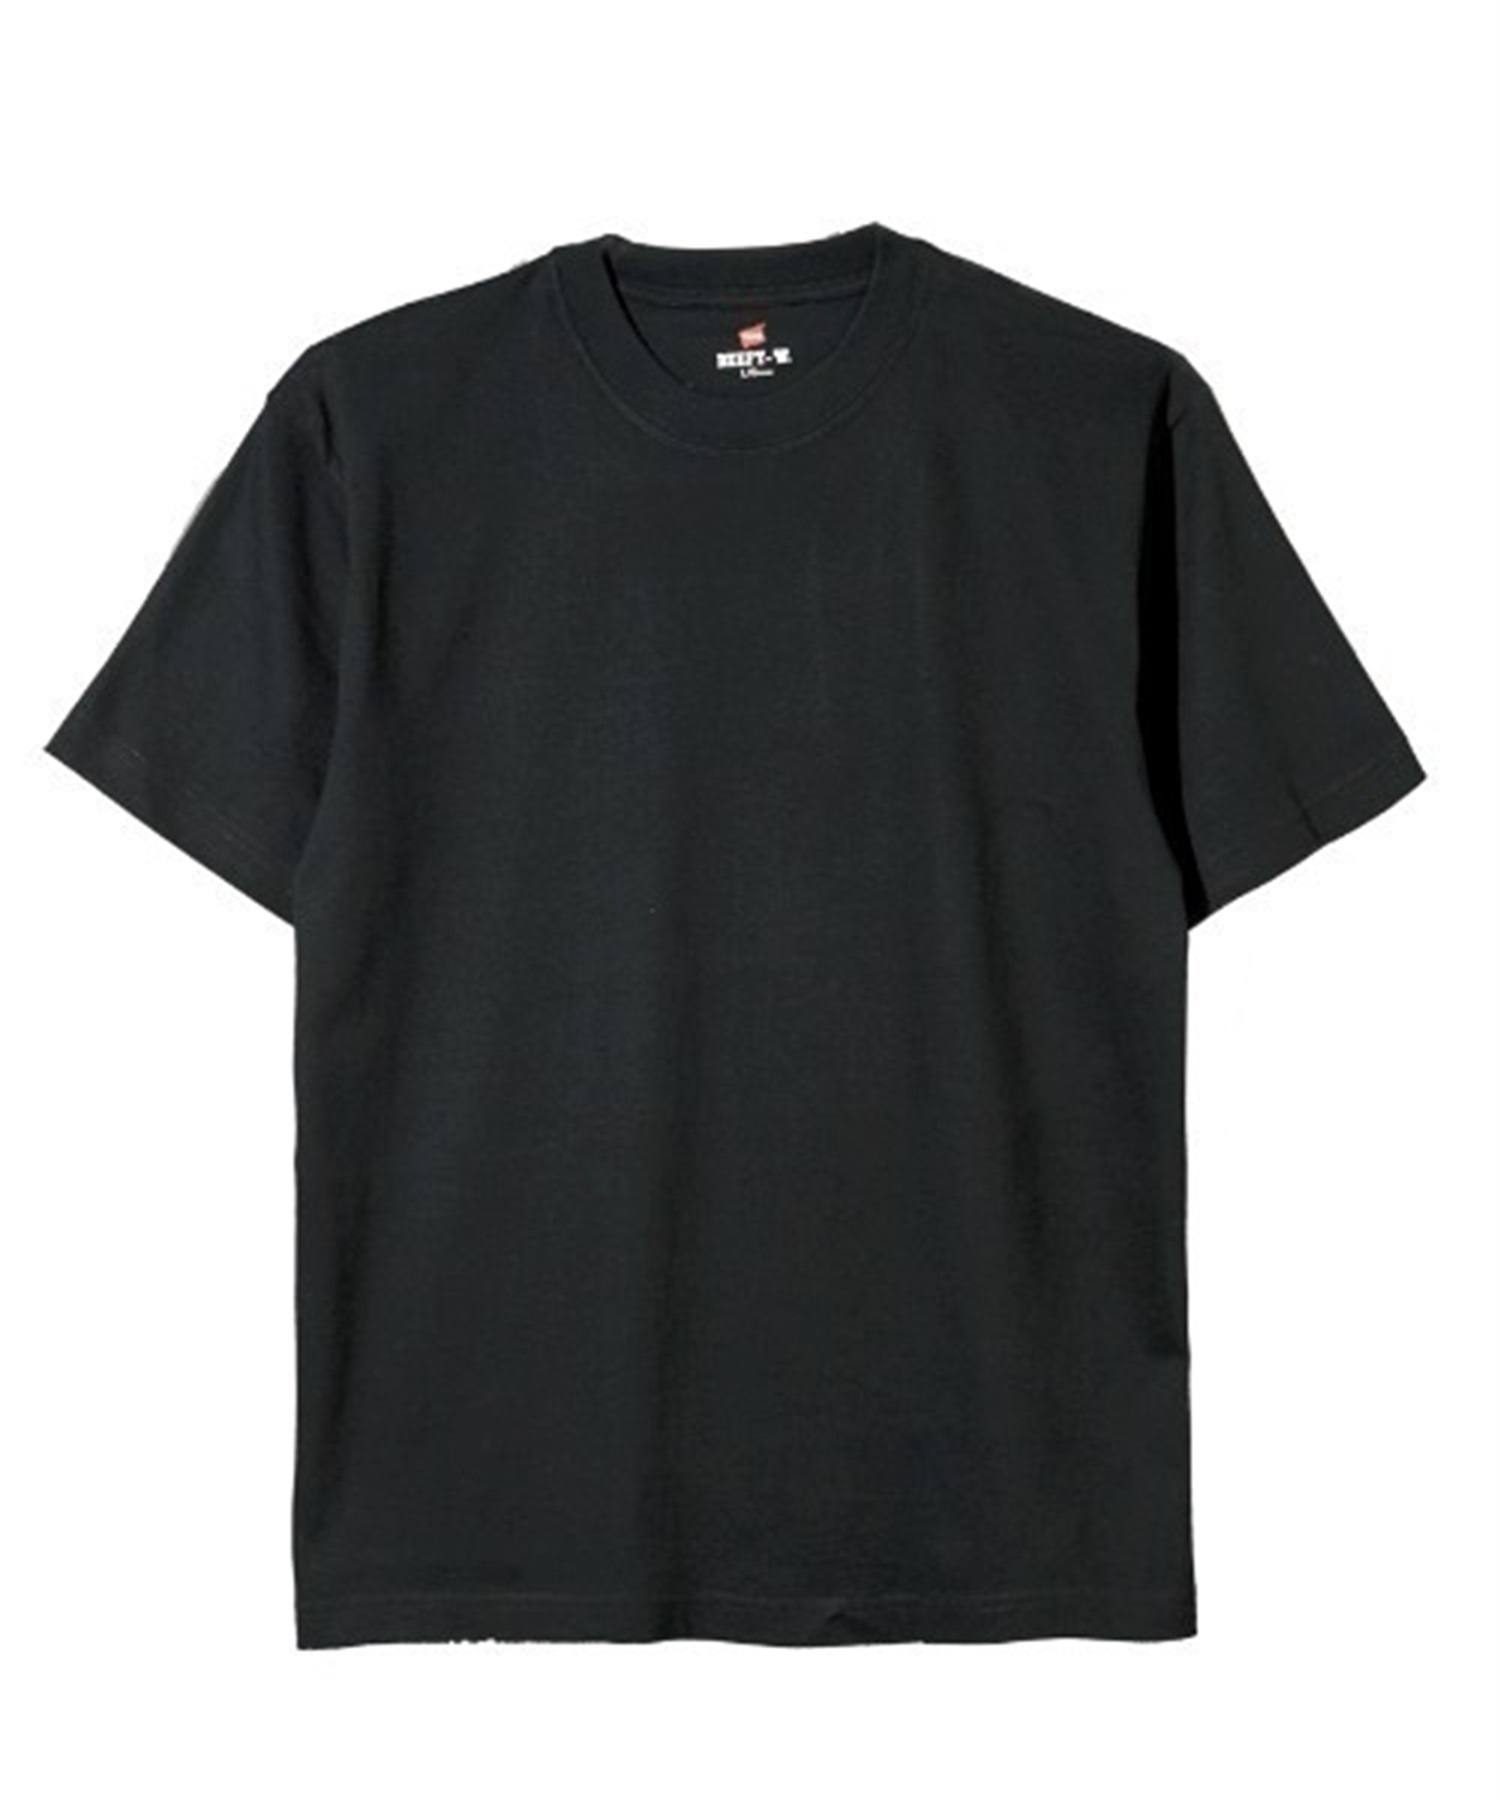 【マトメガイ対象】メンズ 半袖 Tシャツ HANES ヘインズ H5180 BEEFY CREW NECK T-SHIRT ビーフィー クルーネック Tシャツ II C8 GW5M(010-S)